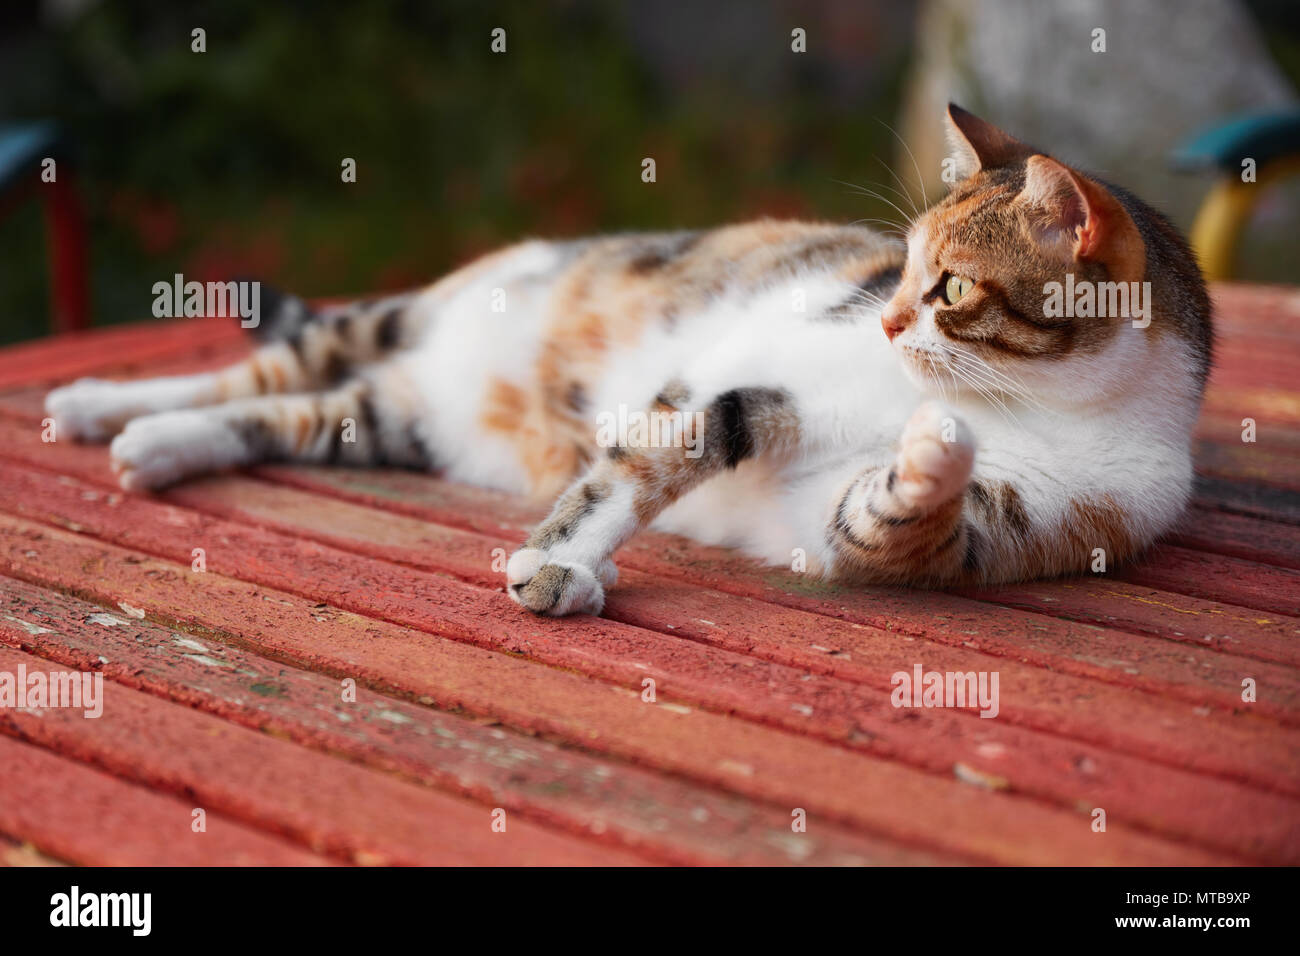 Ritratto di un gatto staring a sinistra con un'espressione preoccupata Foto Stock